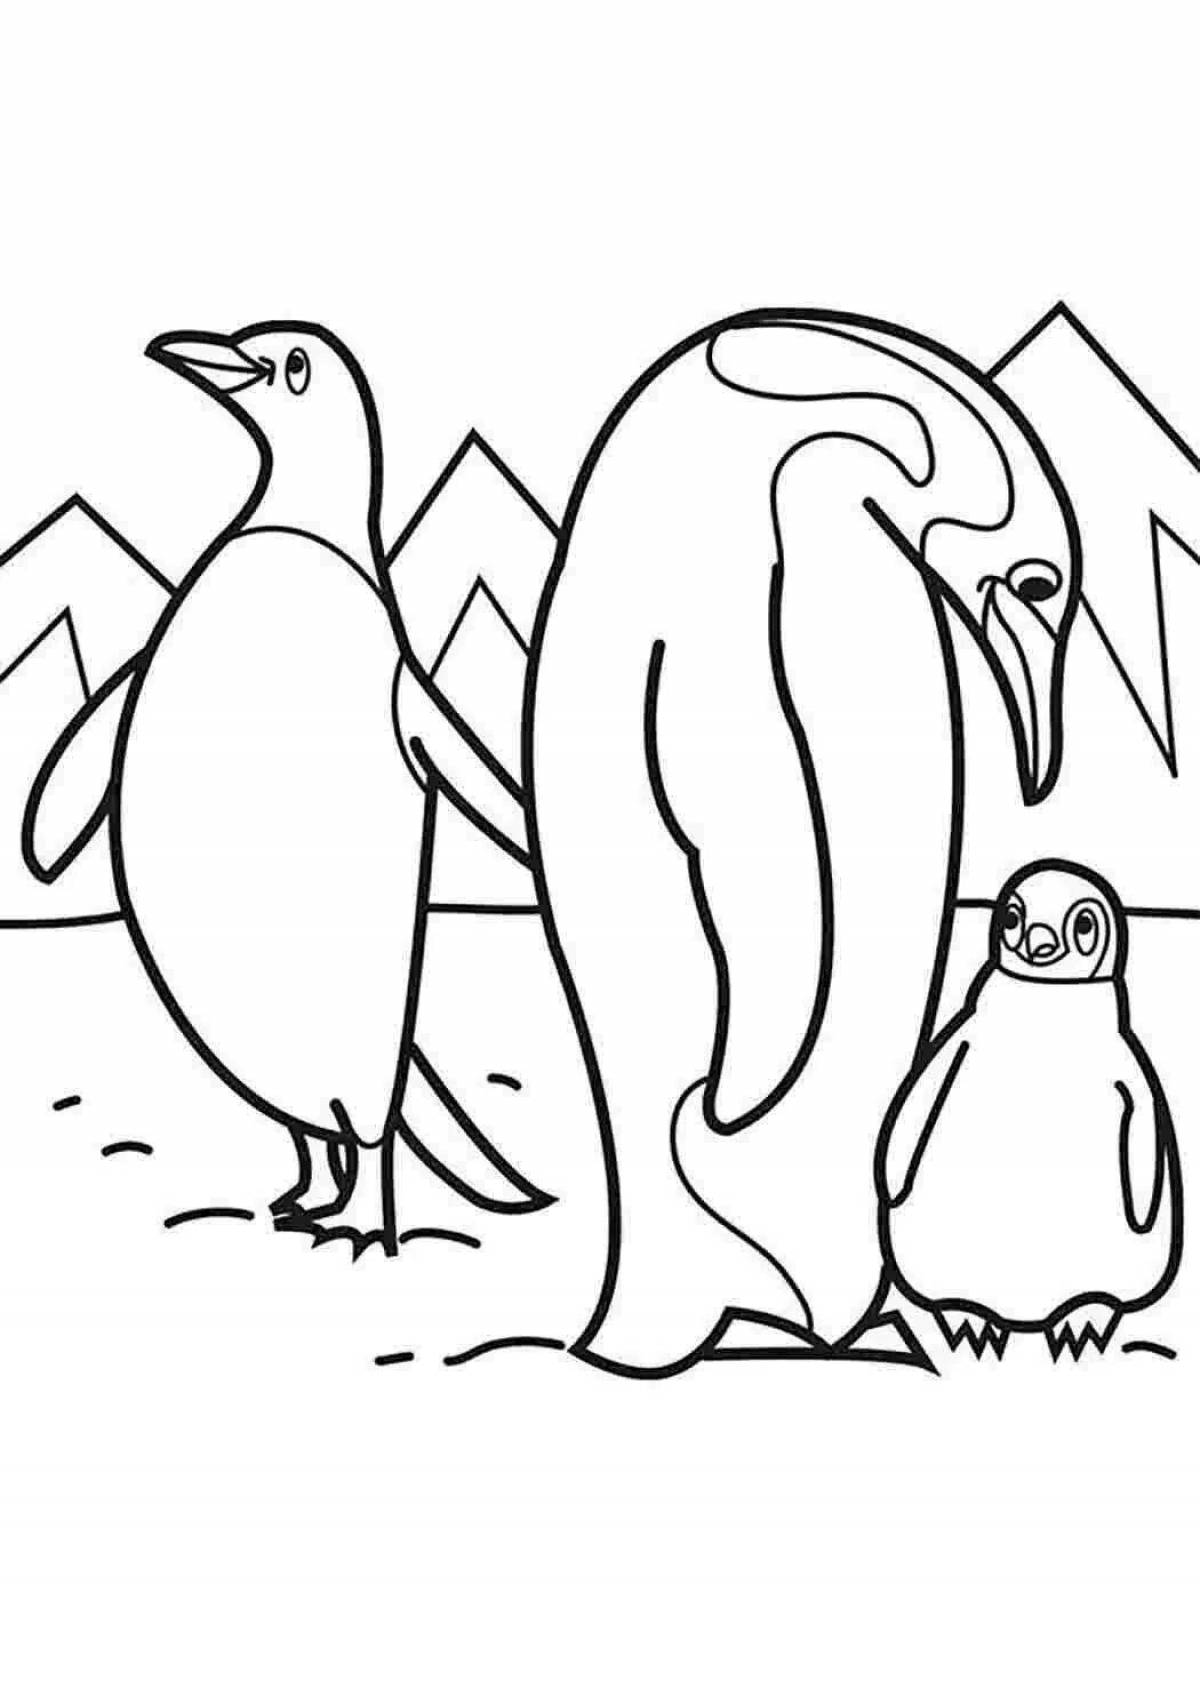 Antarctic exotic penguins